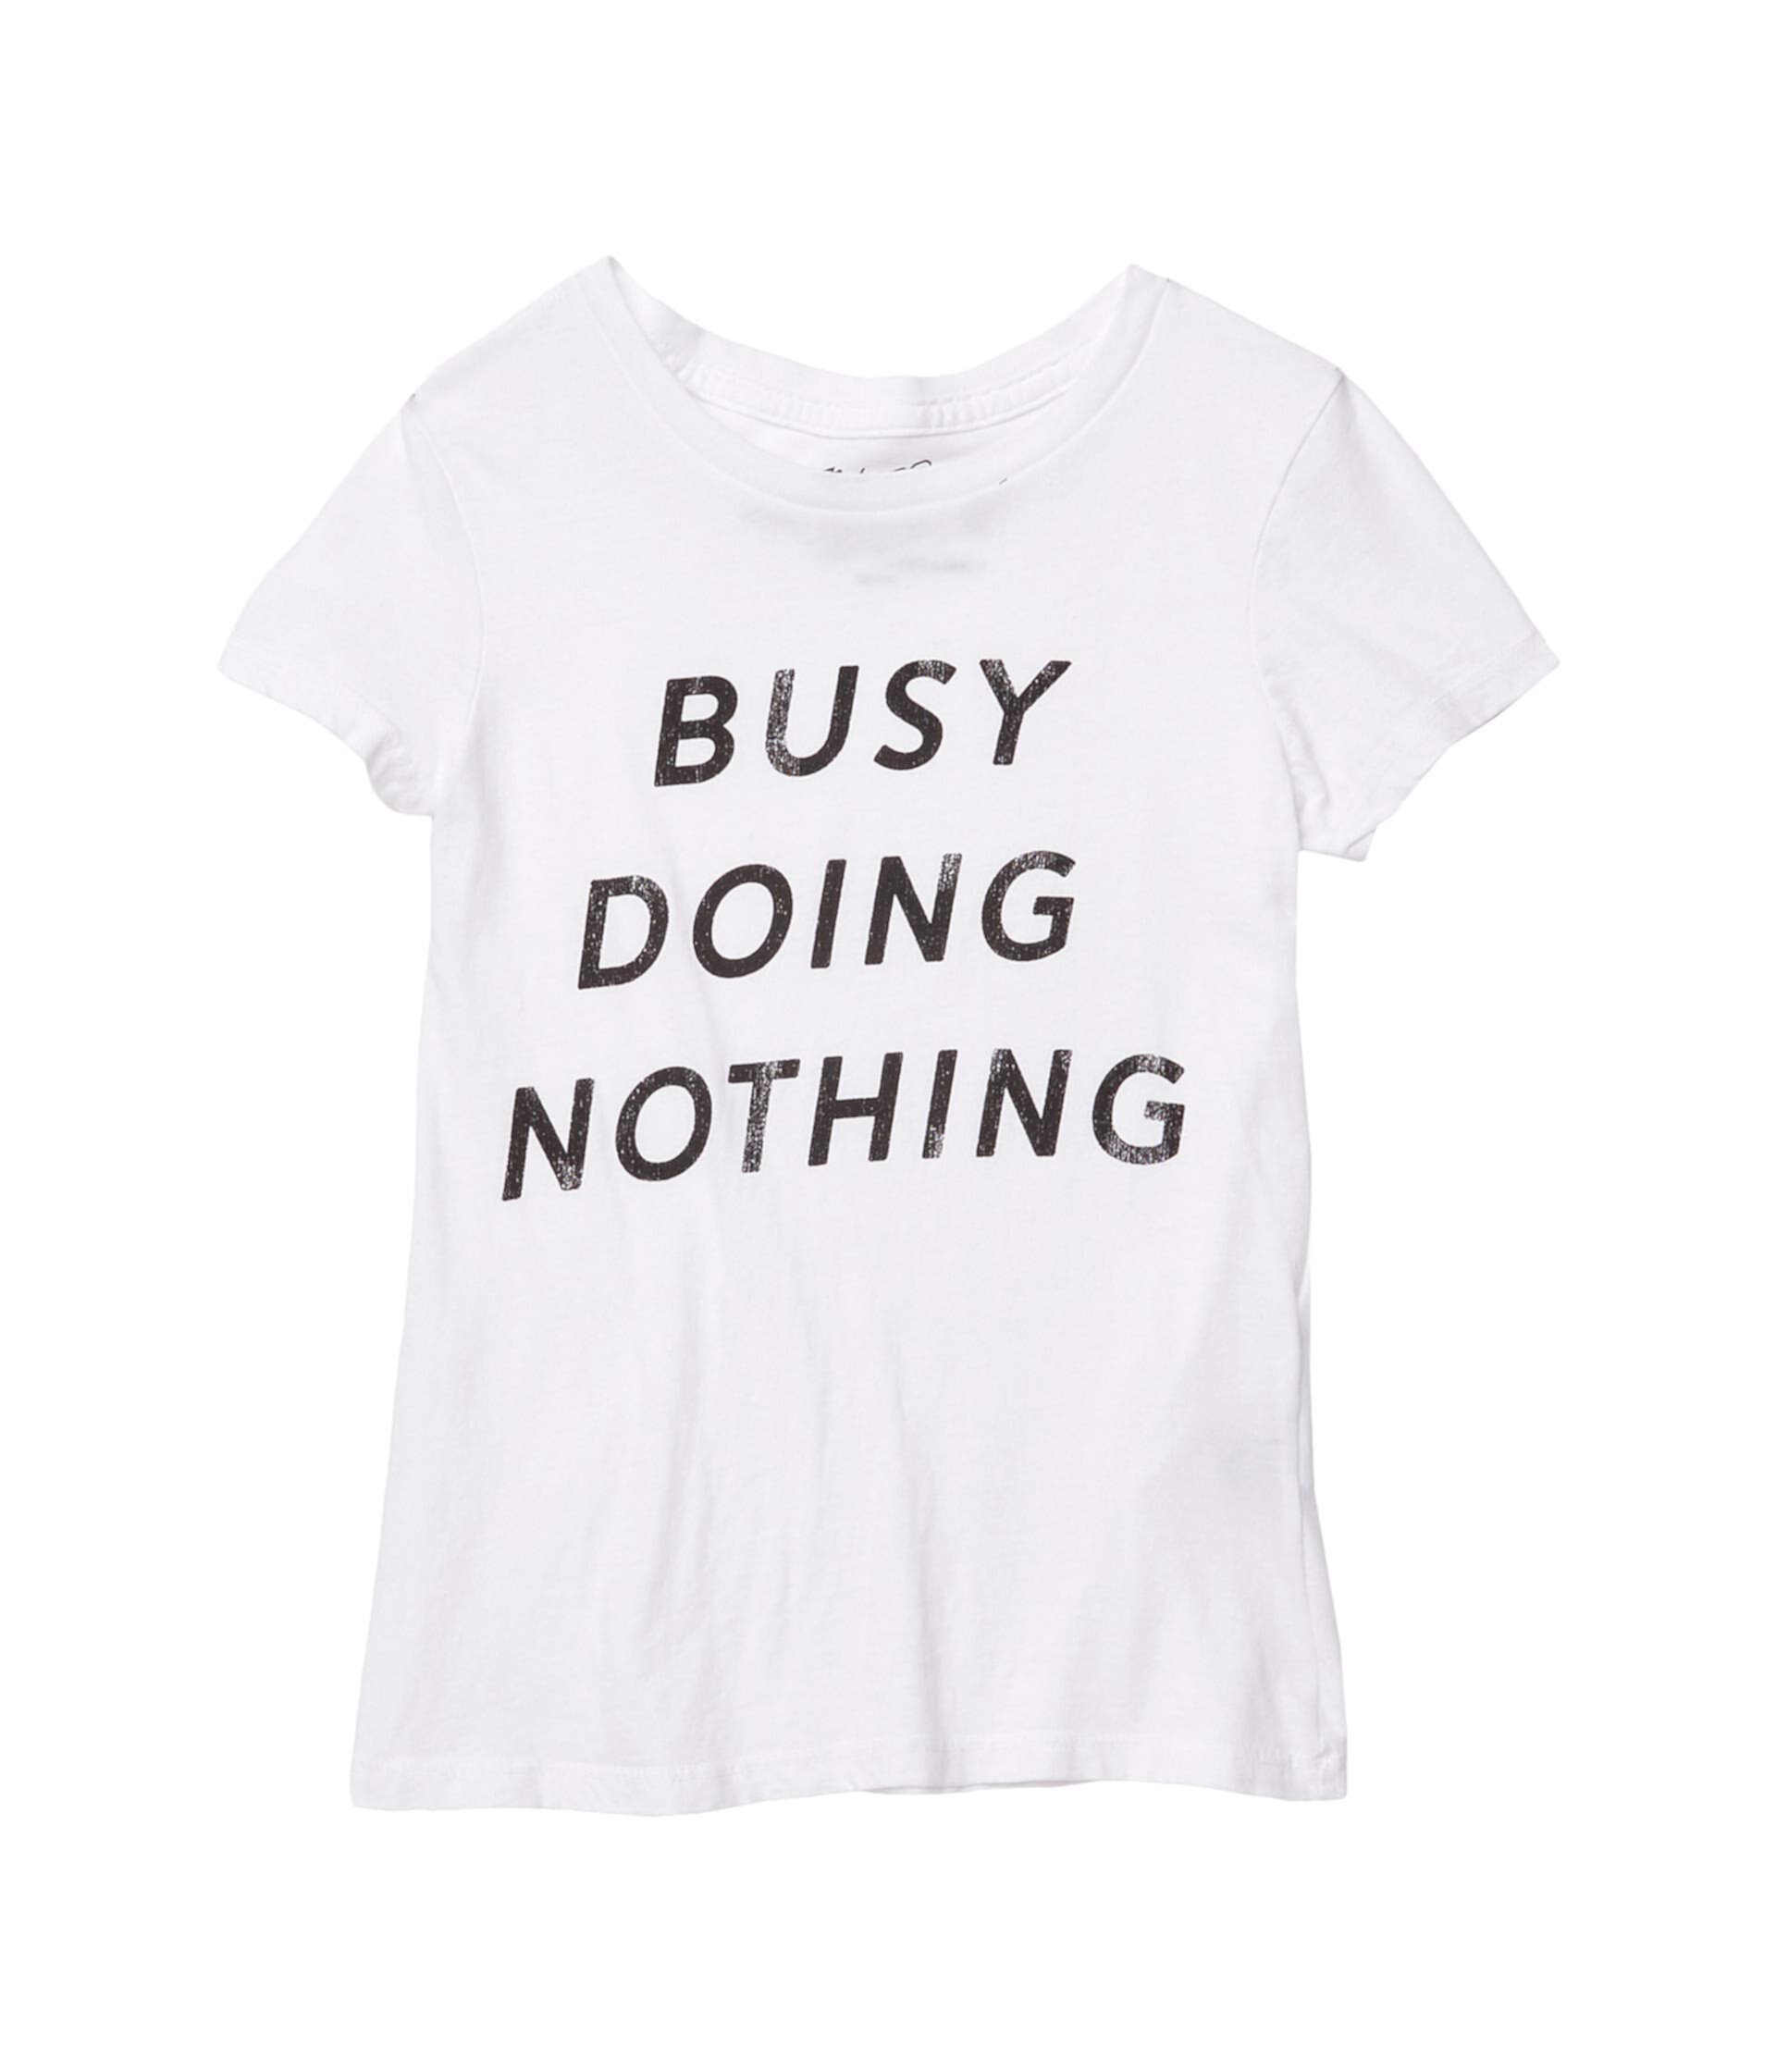 Винтажная хлопковая футболка Busy Doing Nothing (для больших детей) The Original Retro Brand Kids